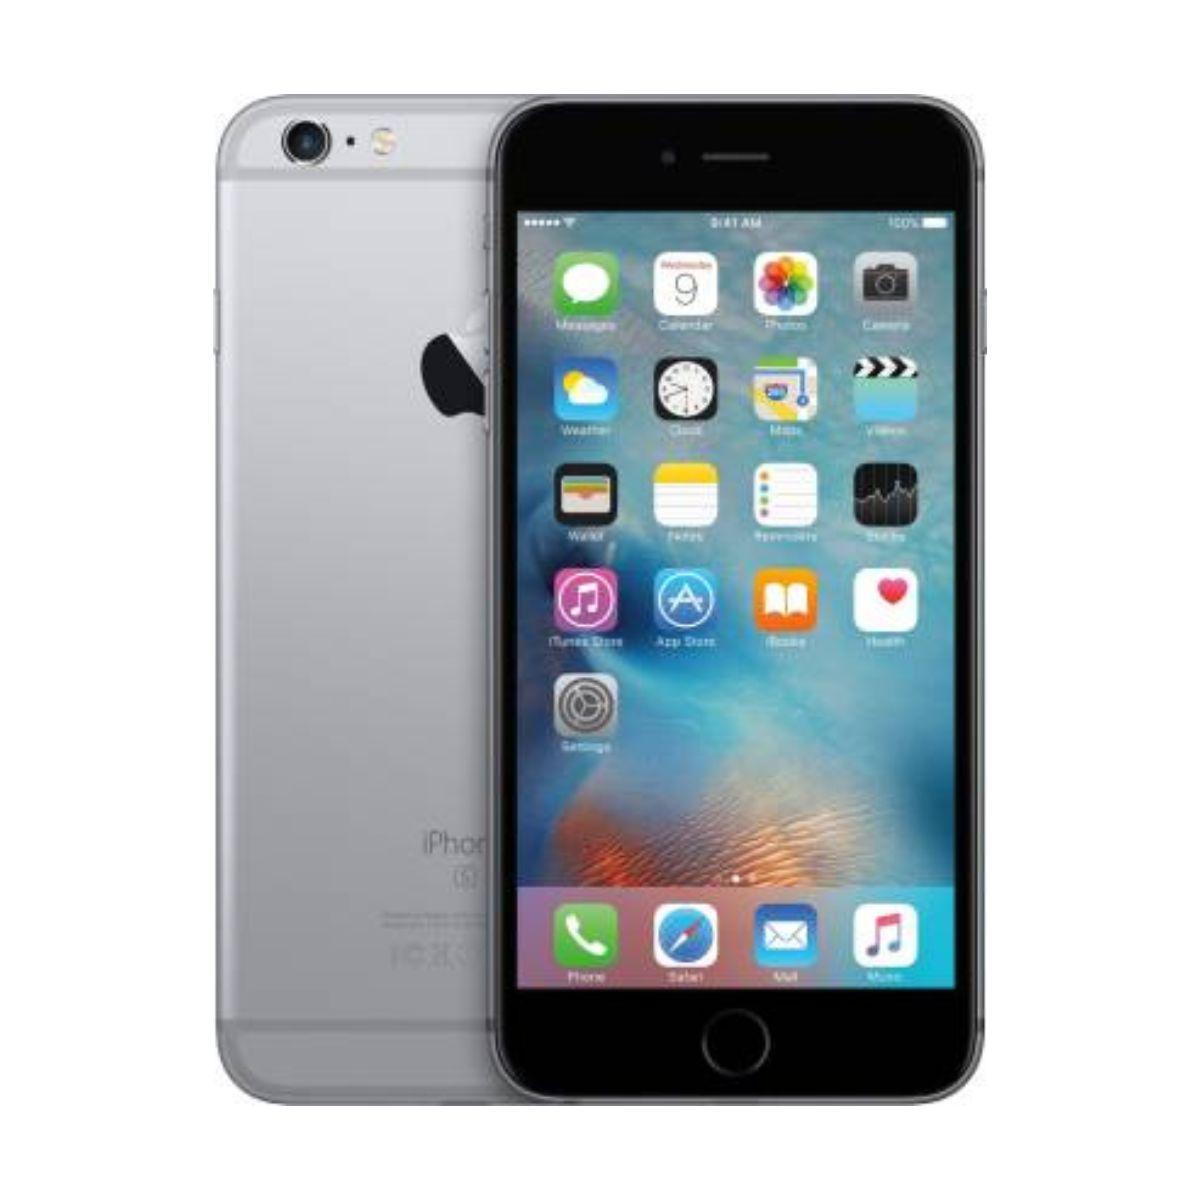 Apple iPhone 6s Plus - Mobilegoo